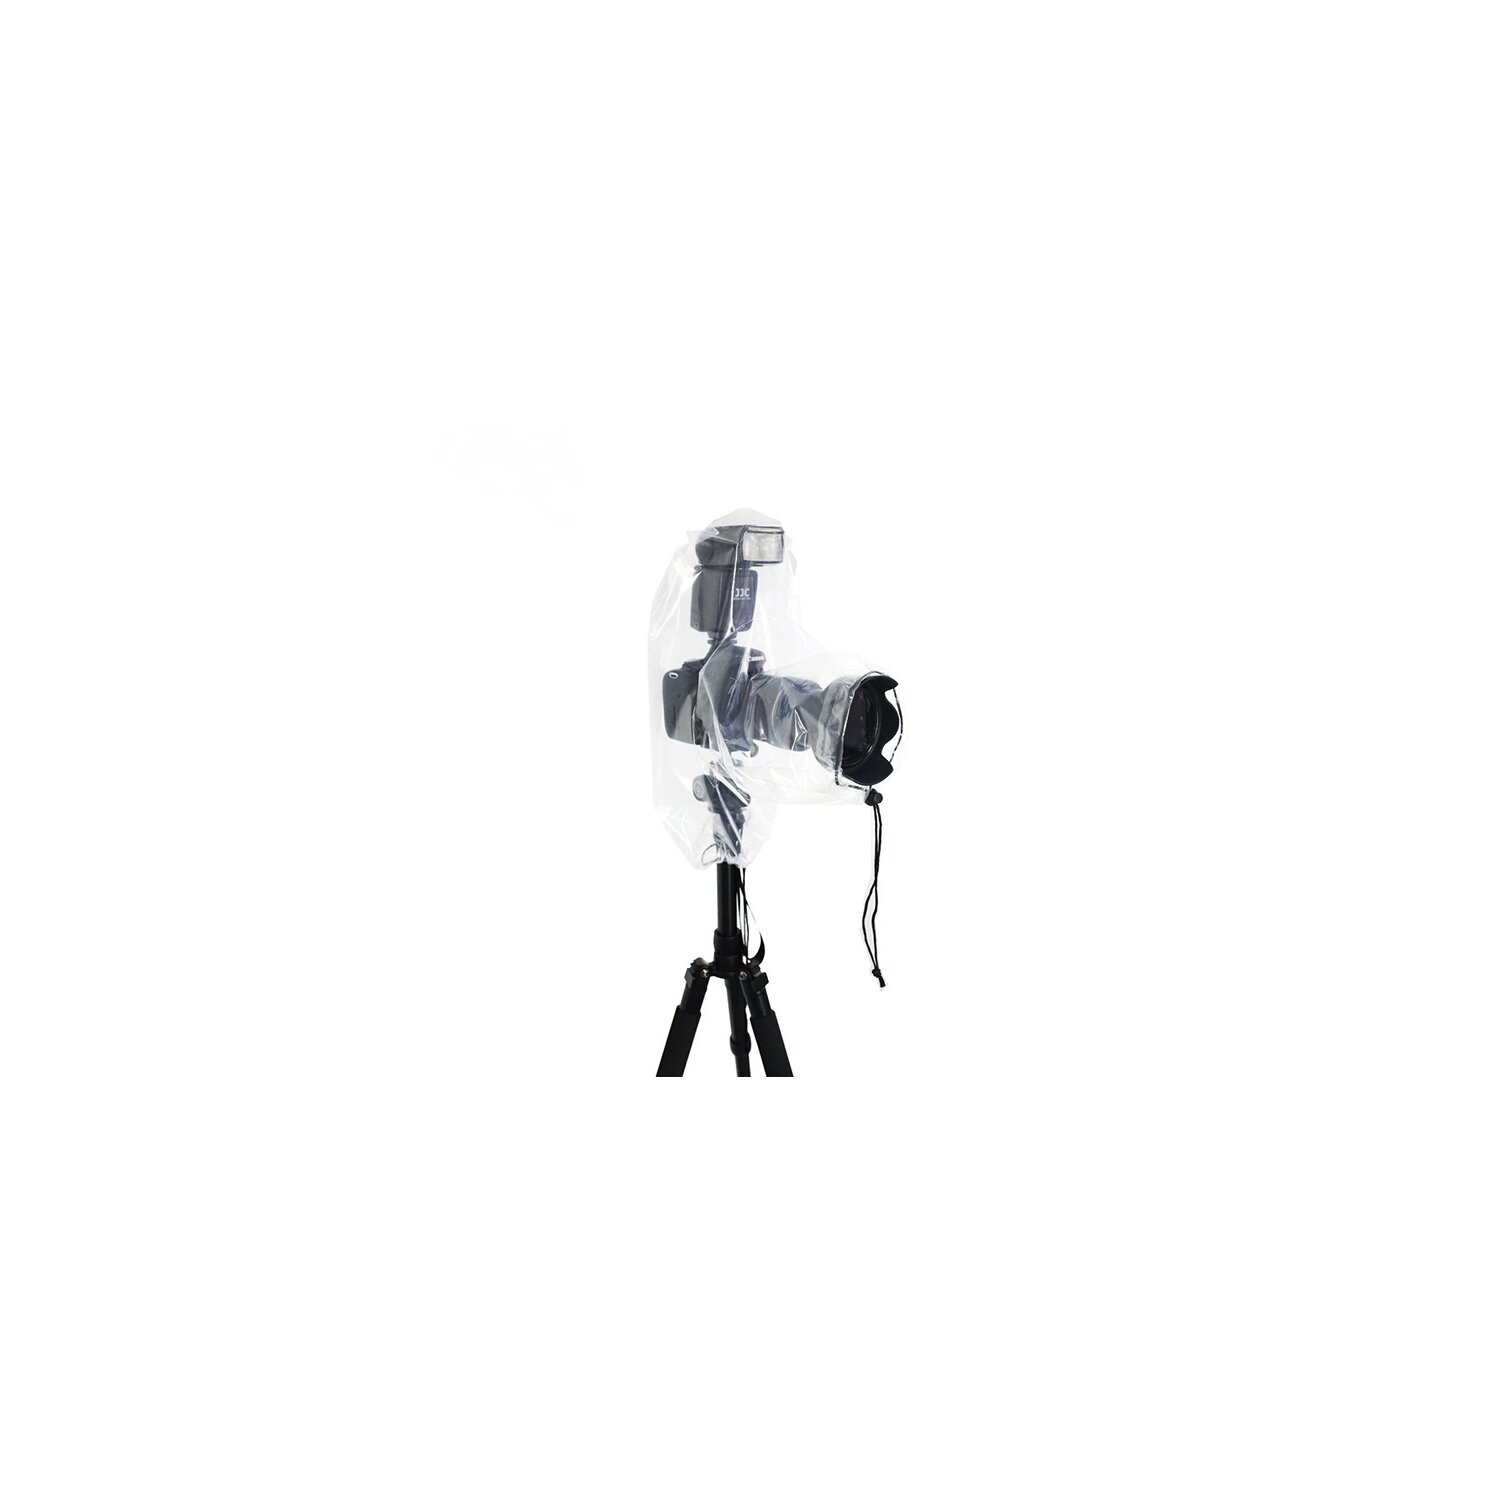 Kabel & Adapter, Kamera, Drohnen & Fotozubehör, Foto & Camcorder